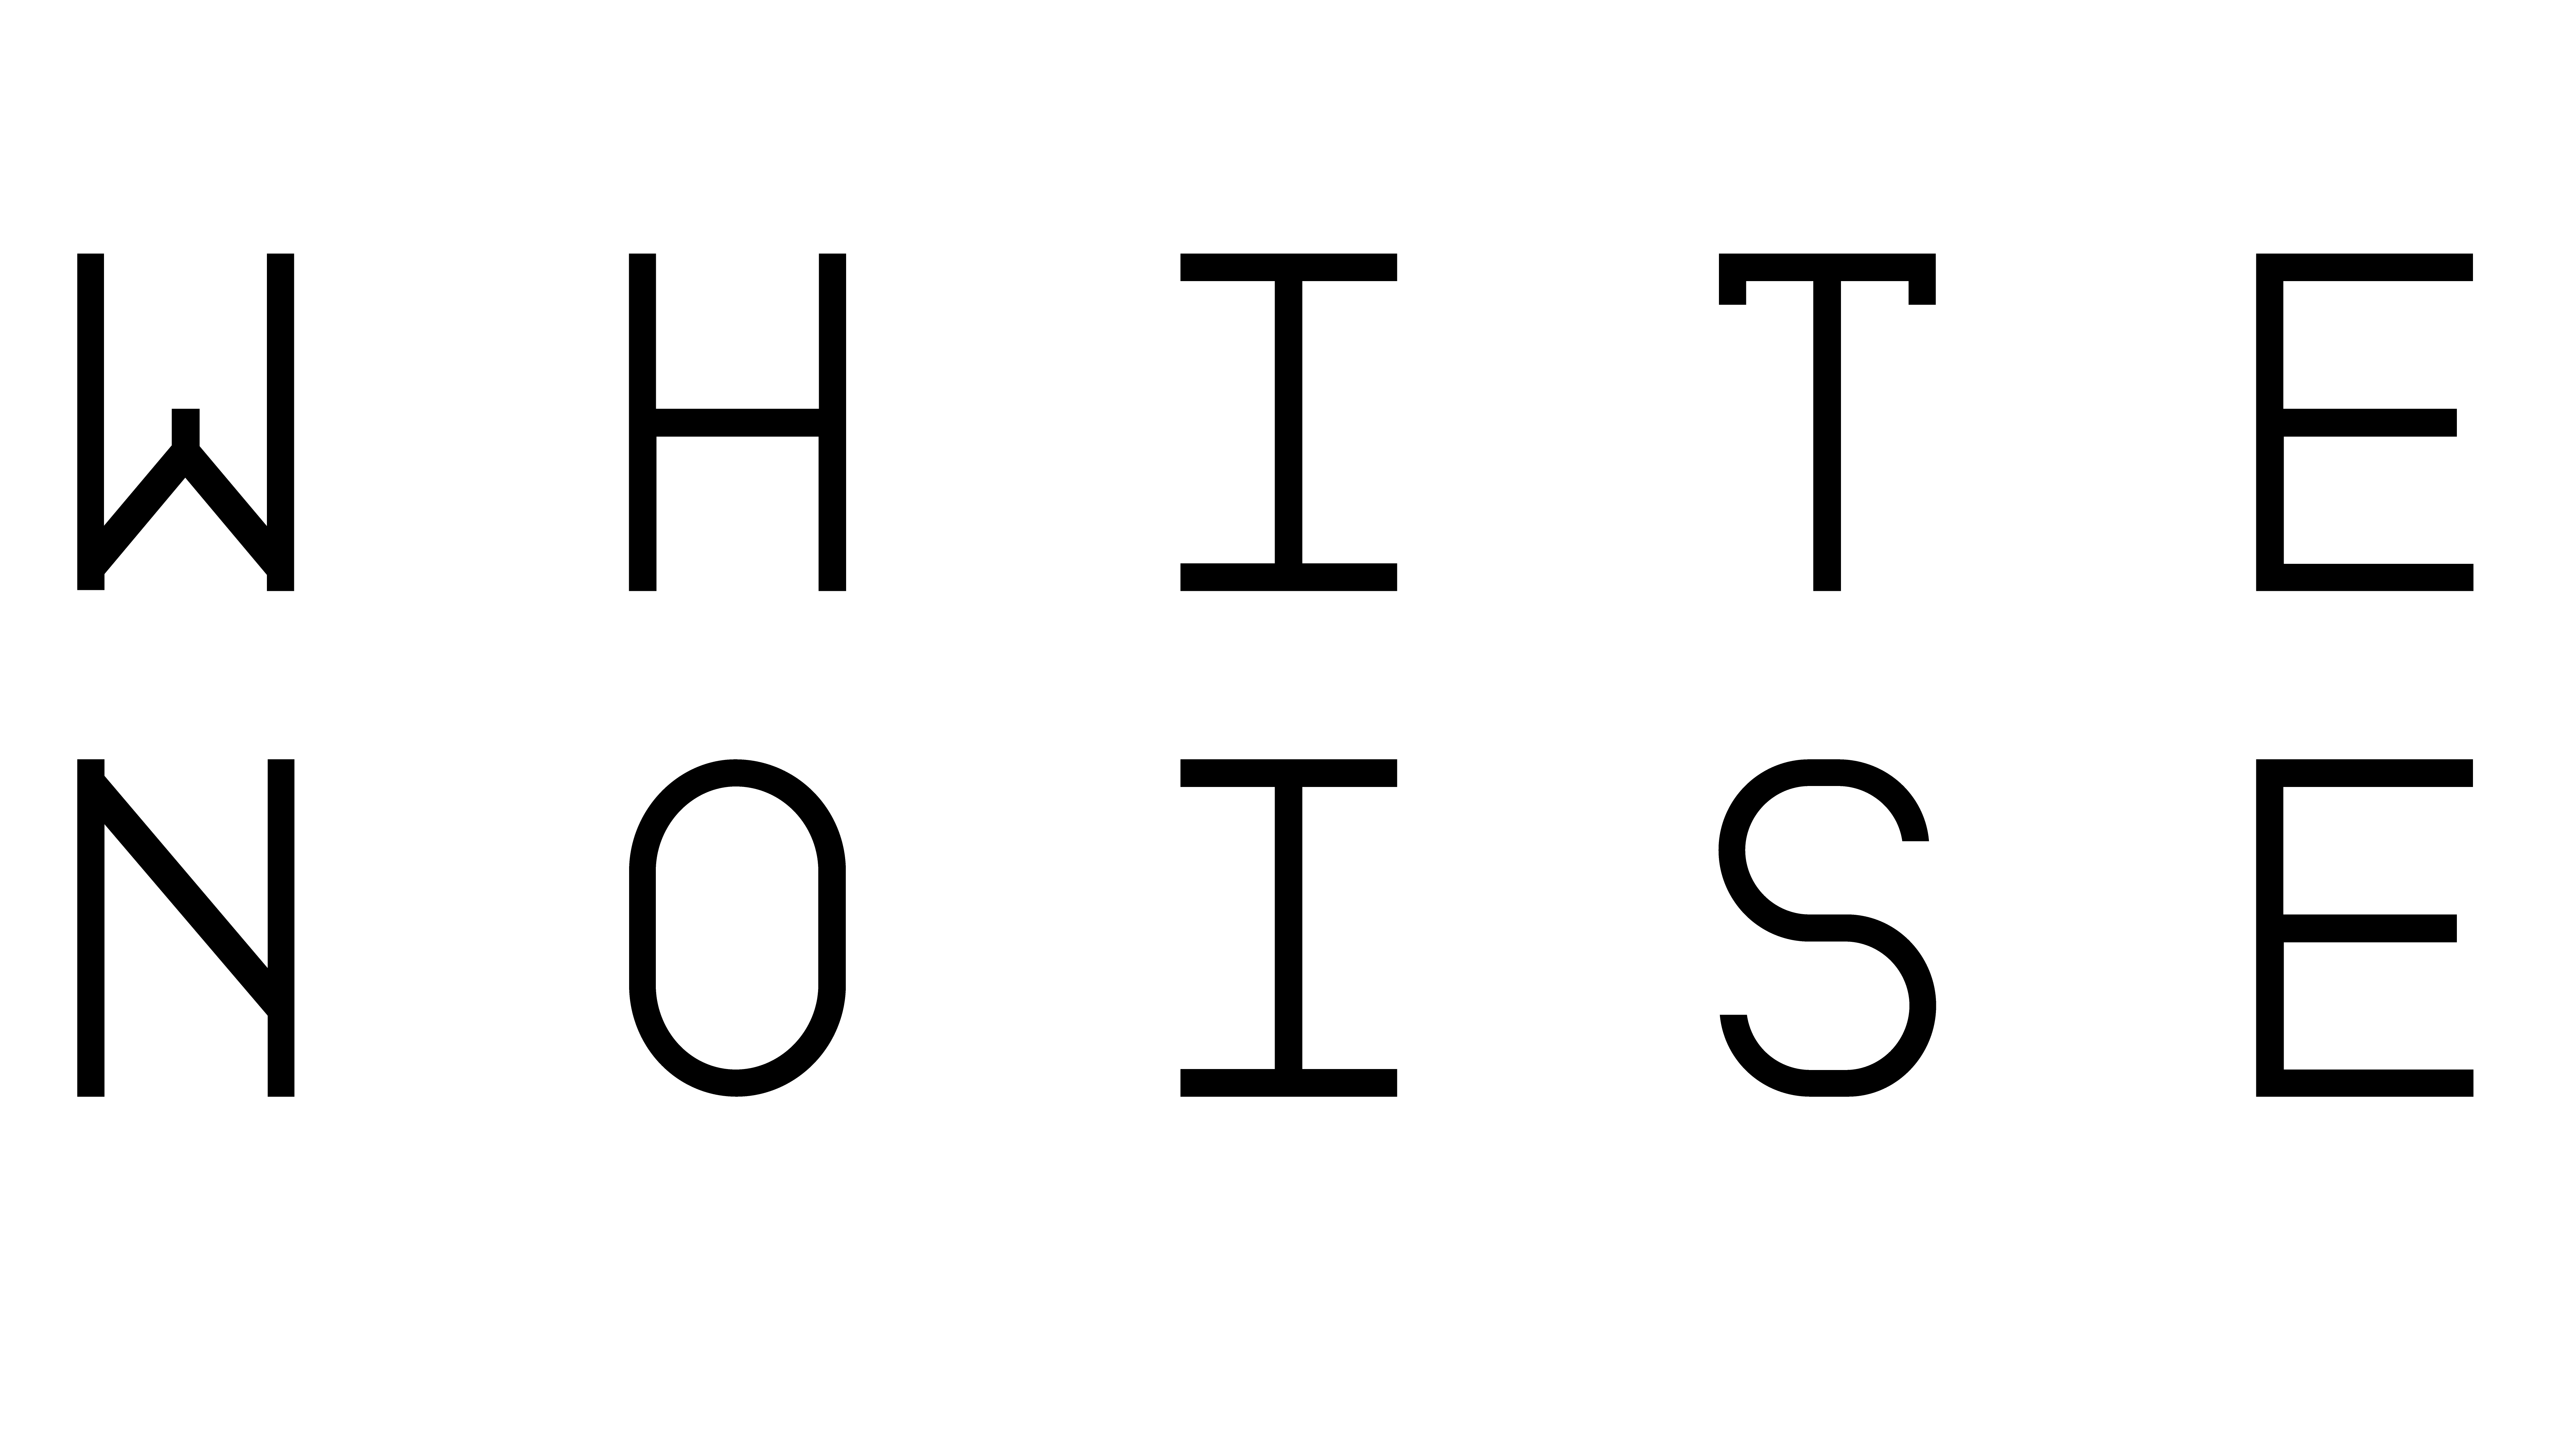 White Noise Logo